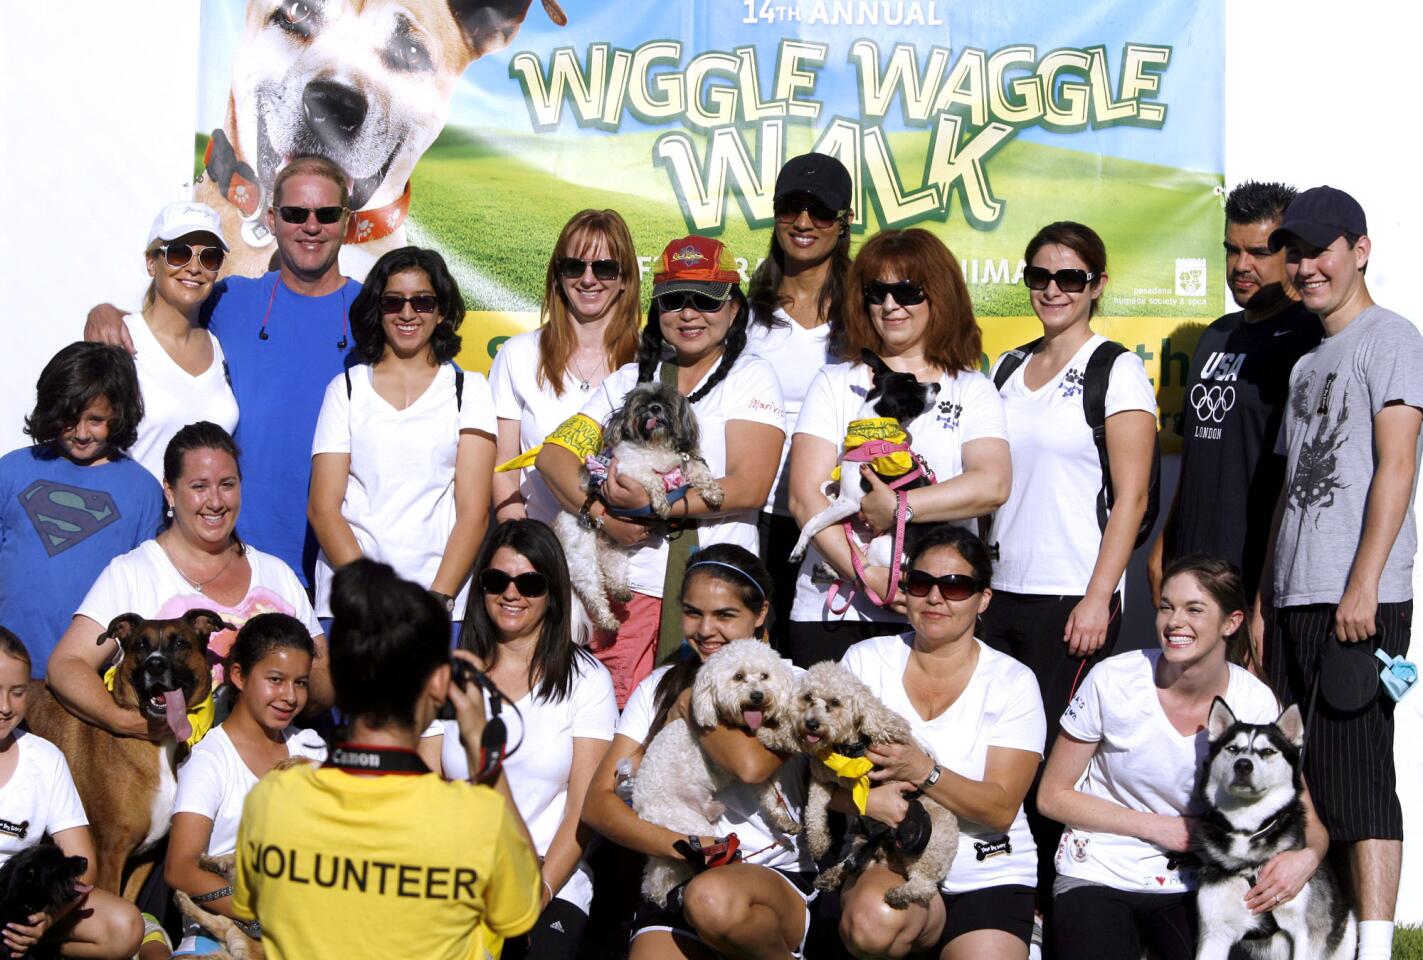 Photo Gallery: Wiggle Waggle Walk in Pasadena